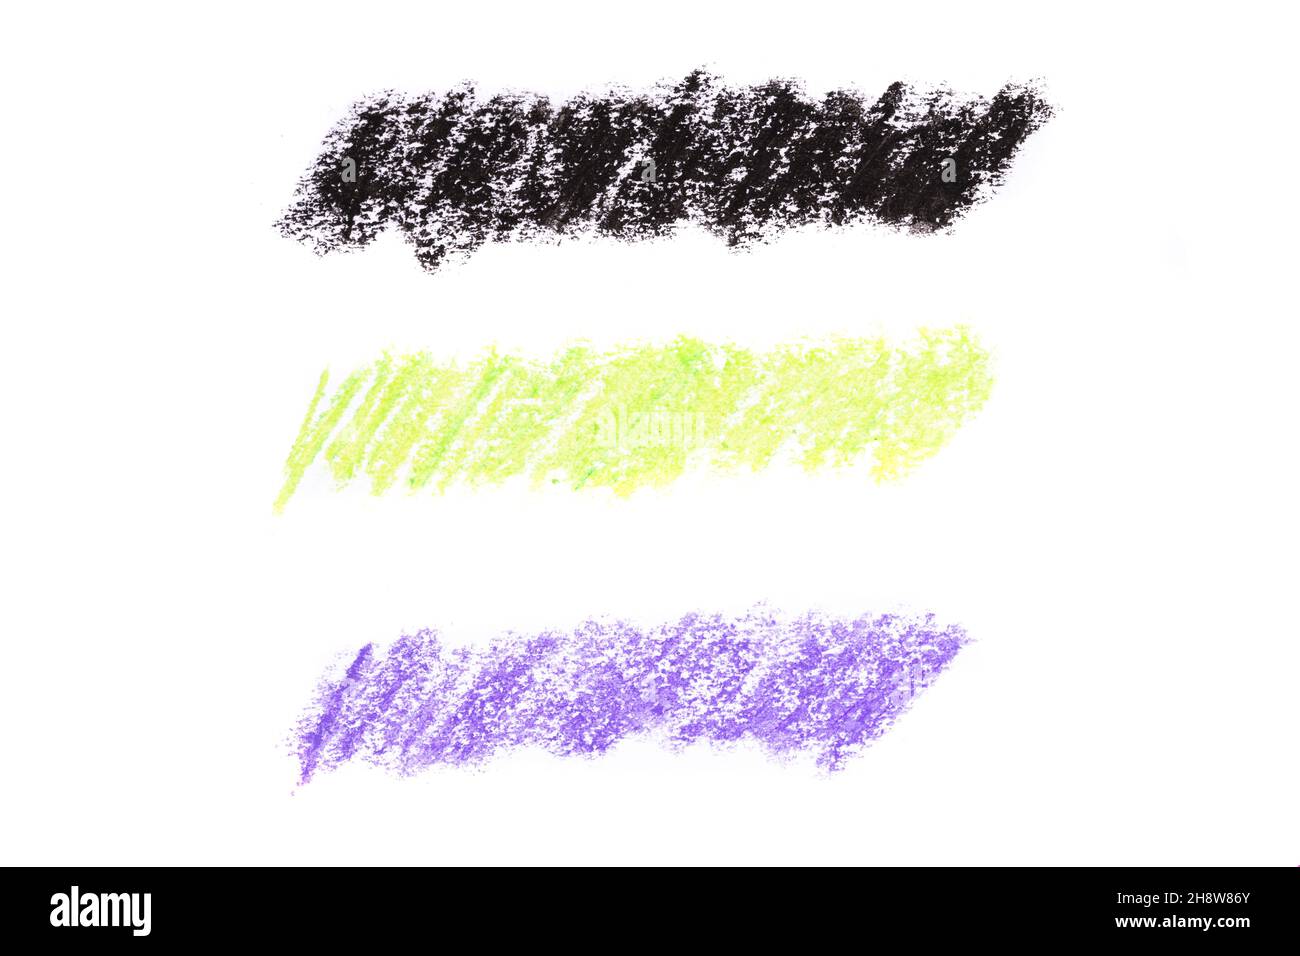 jeu de traits de crayon à huile de couleur isolés sur fond blanc.Photo de haute qualité Banque D'Images